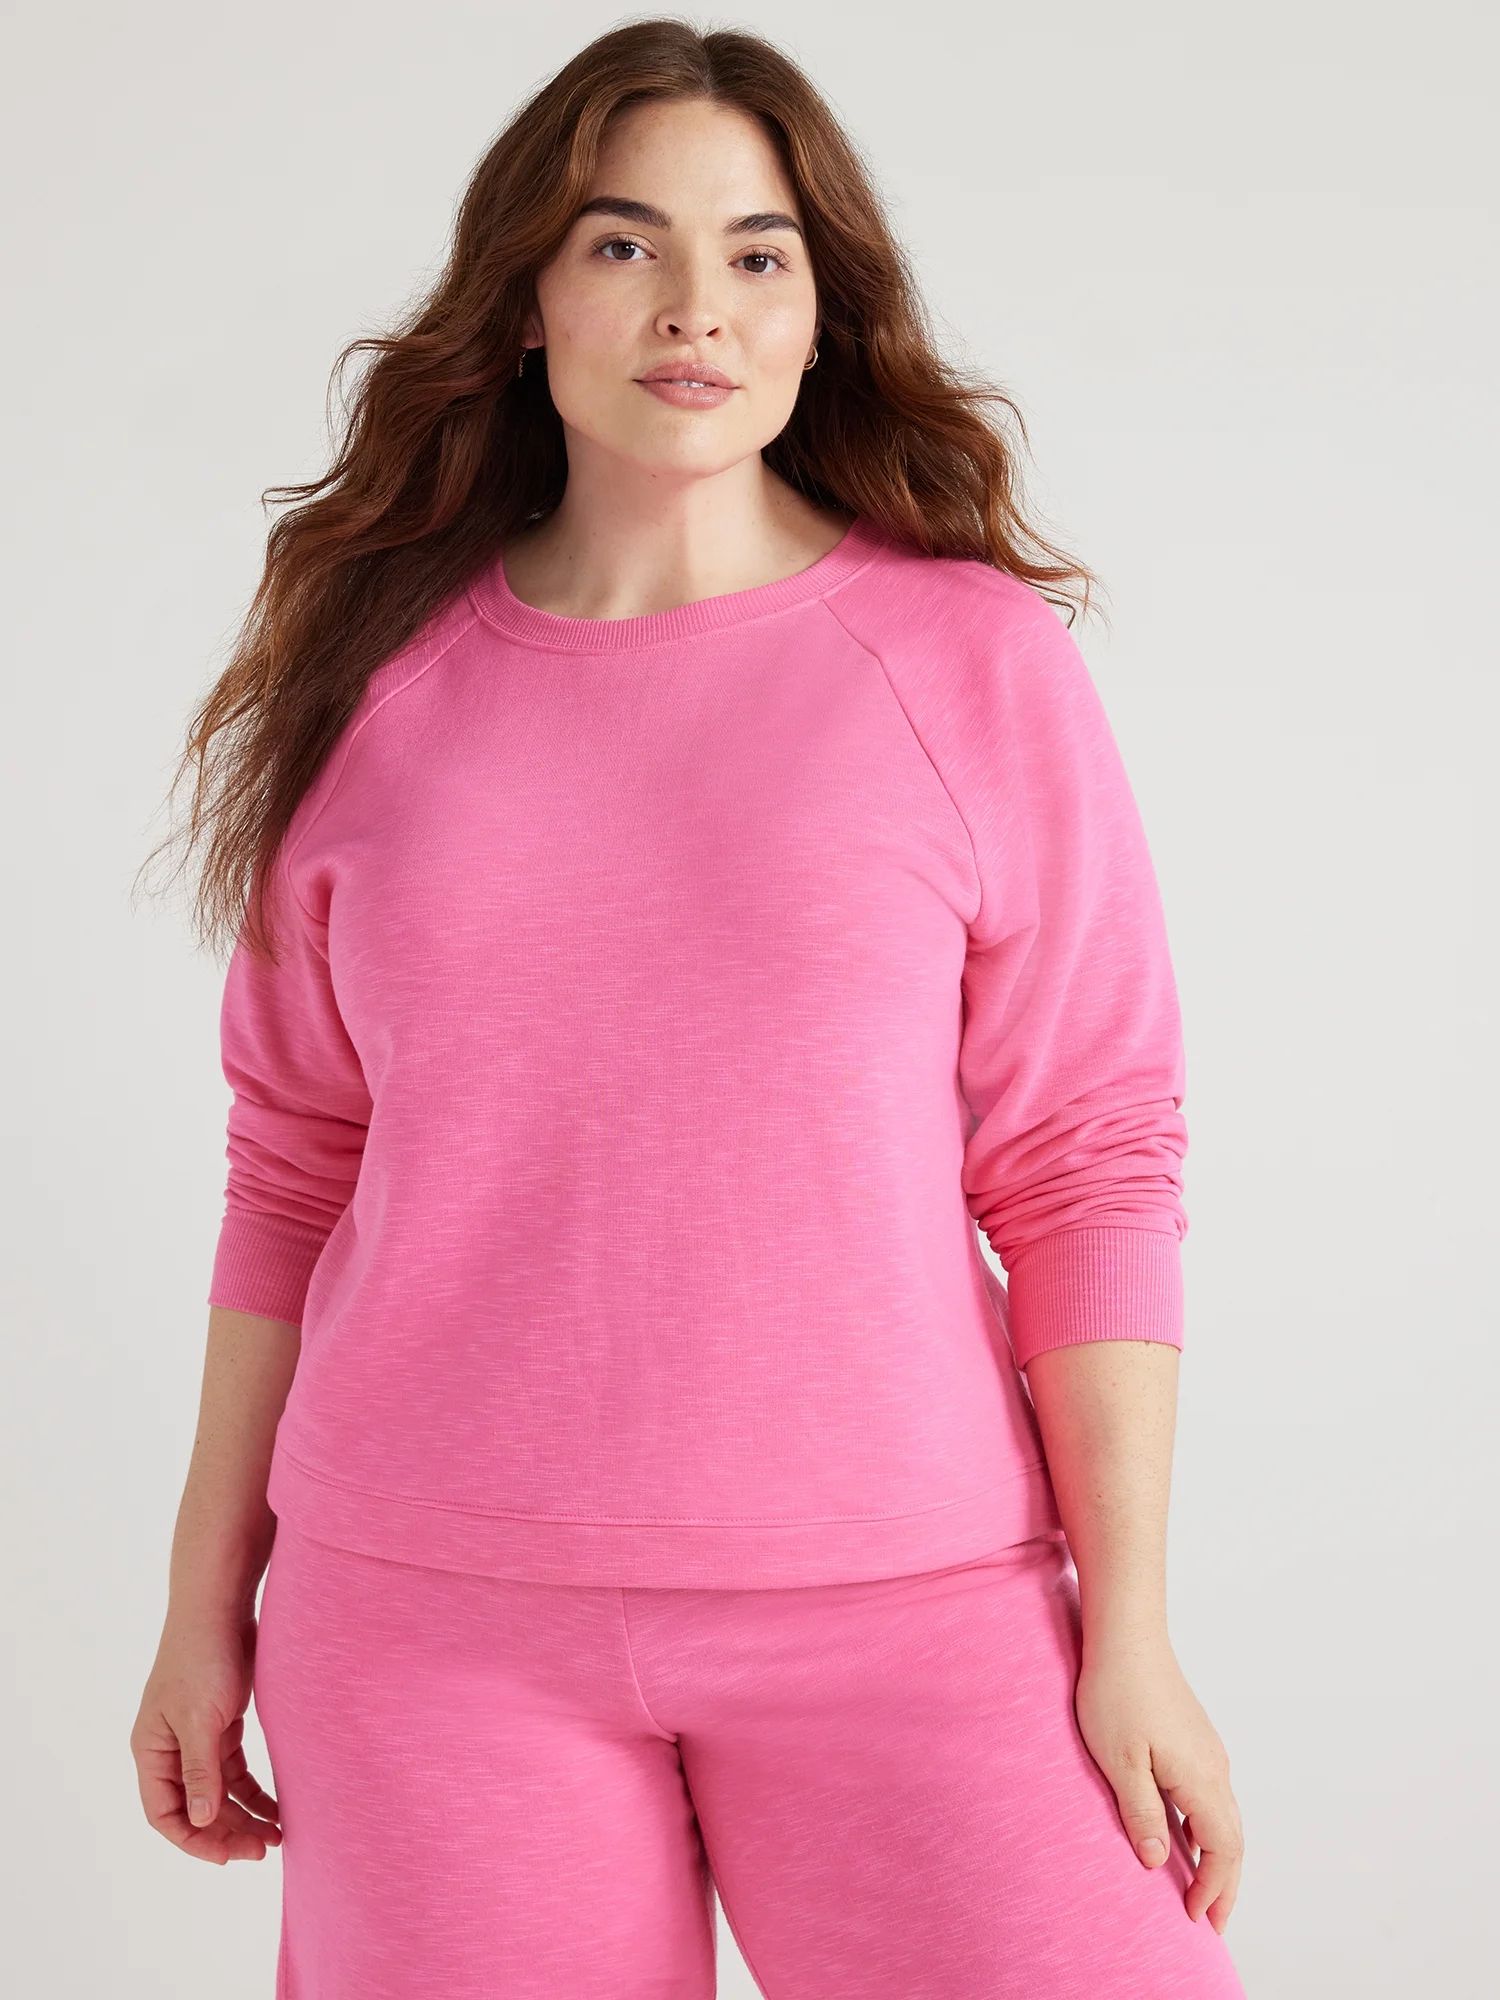 Joyspun Women's Fleece Sleep Top with Long Sleeves, Sizes XS to 3X | Walmart (US)